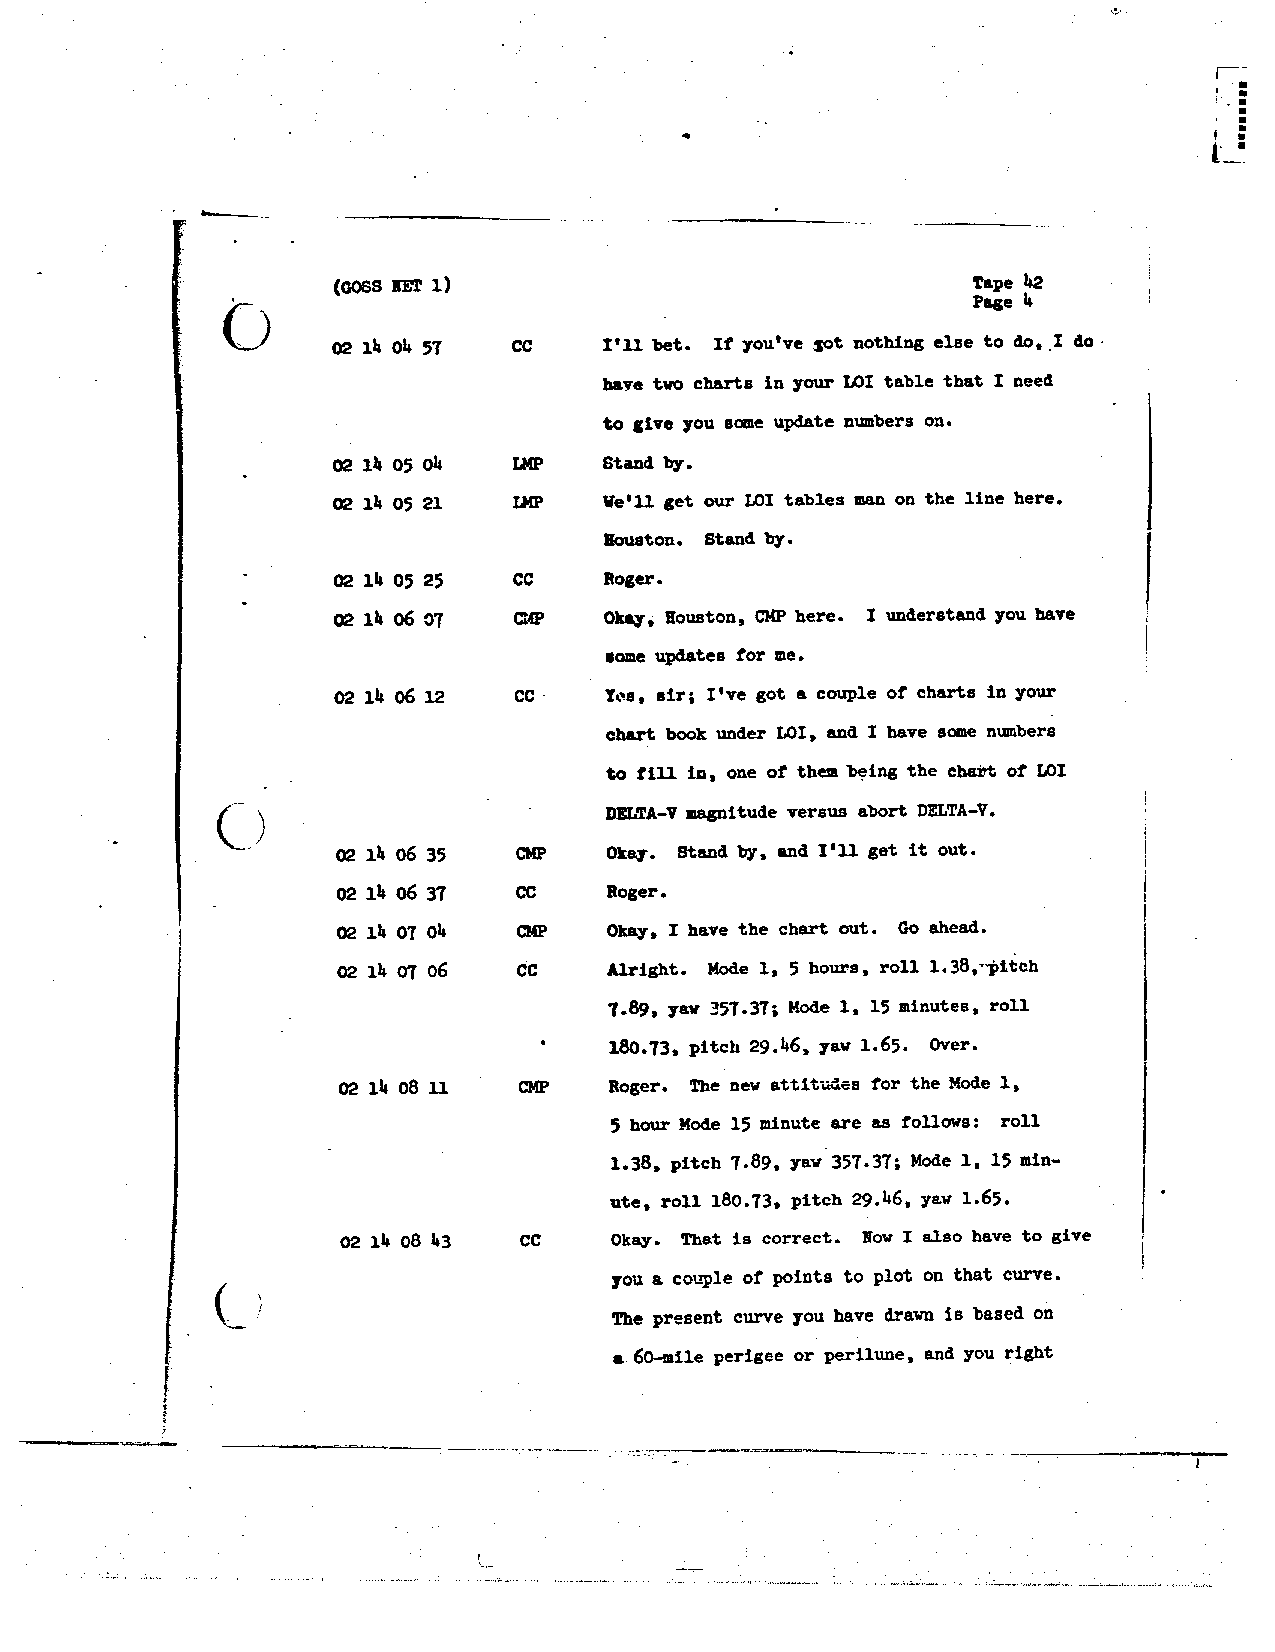 Page 326 of Apollo 8’s original transcript